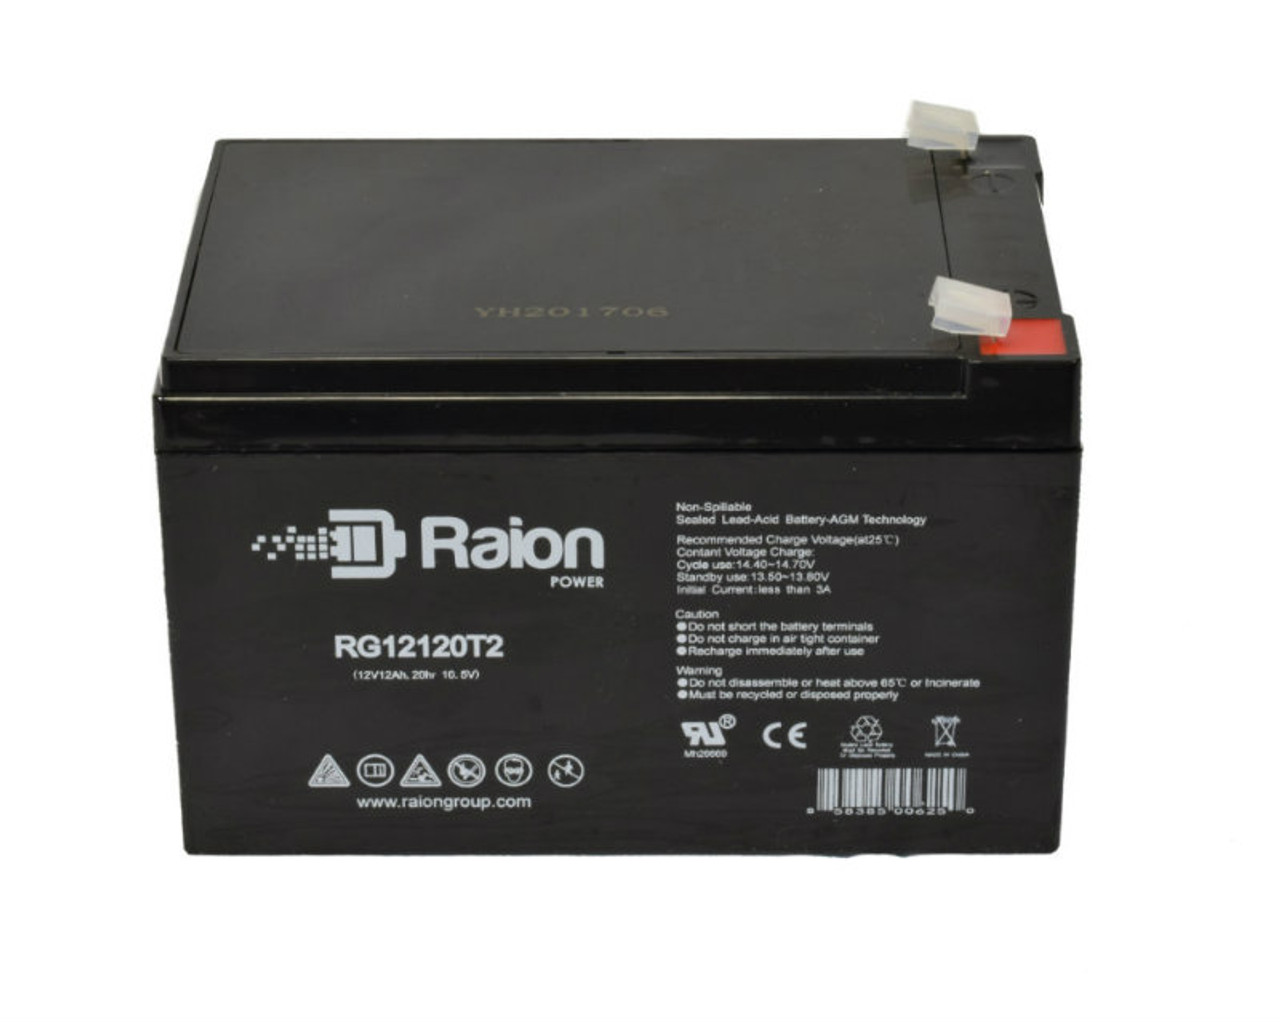 Raion Power RG12120T2 SLA Battery for Daymak Sunshine